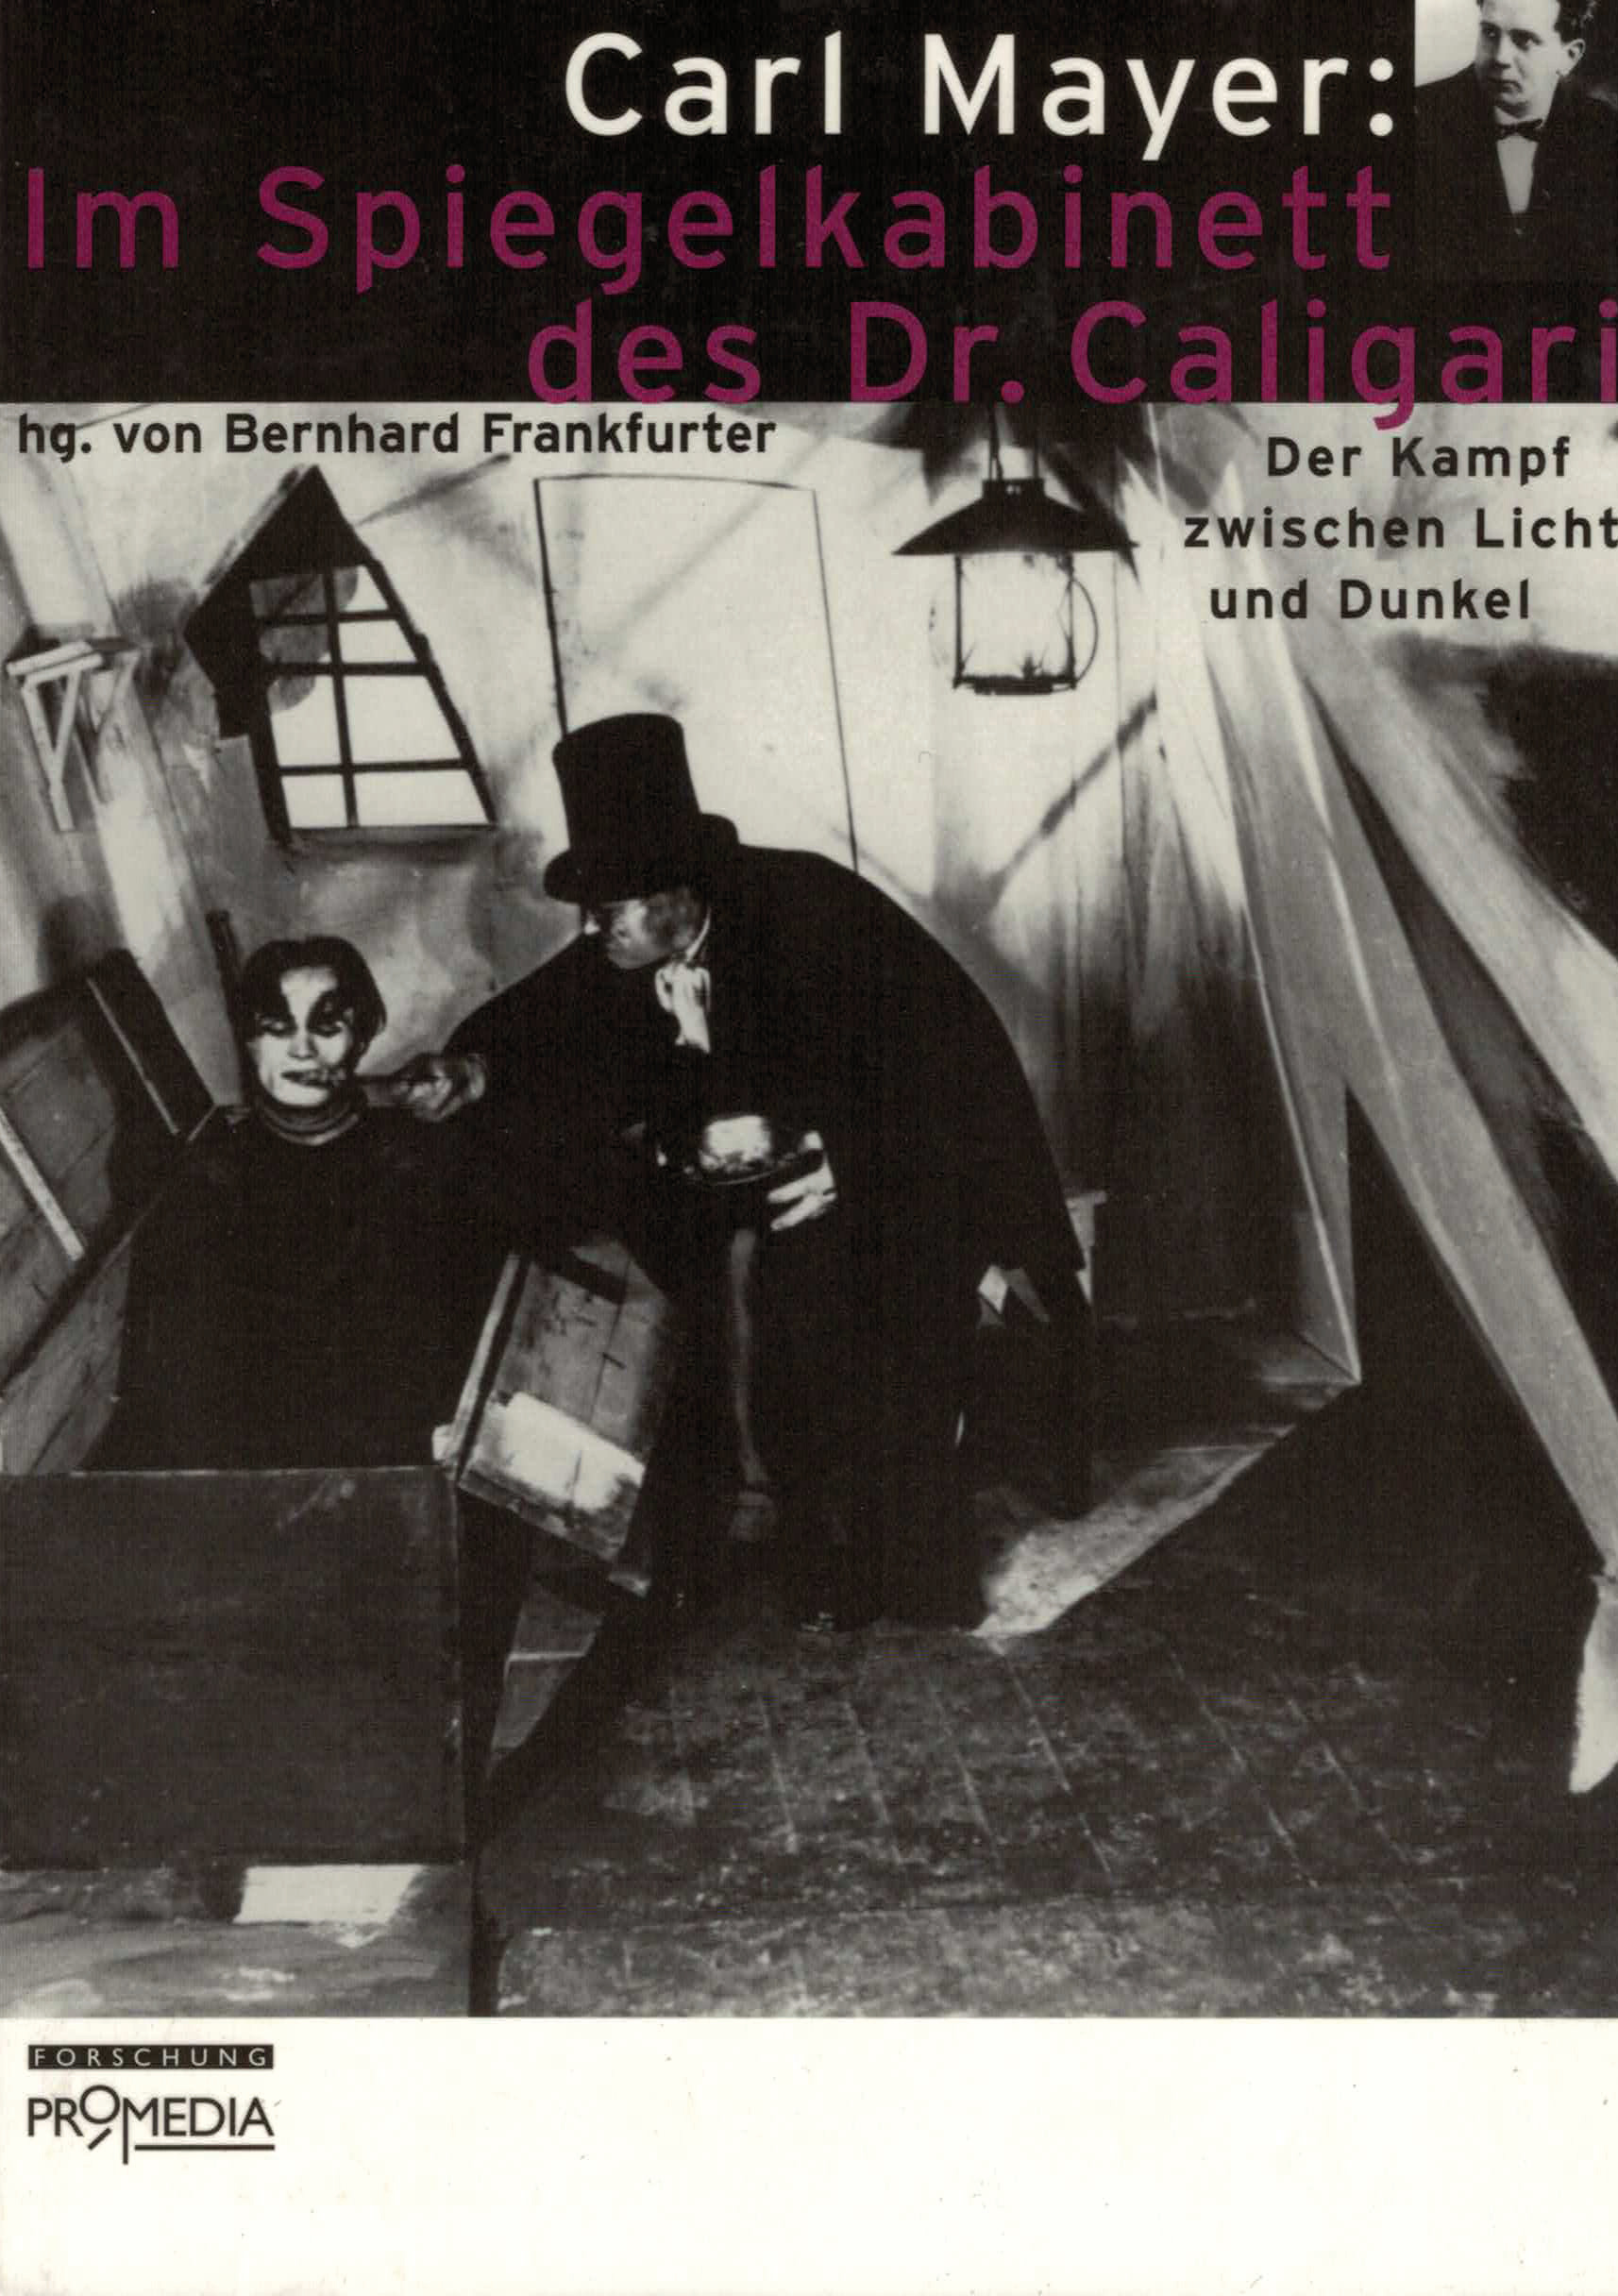 [Cover] Carl Mayer: Im Spiegelkabinett des Dr. Caligari